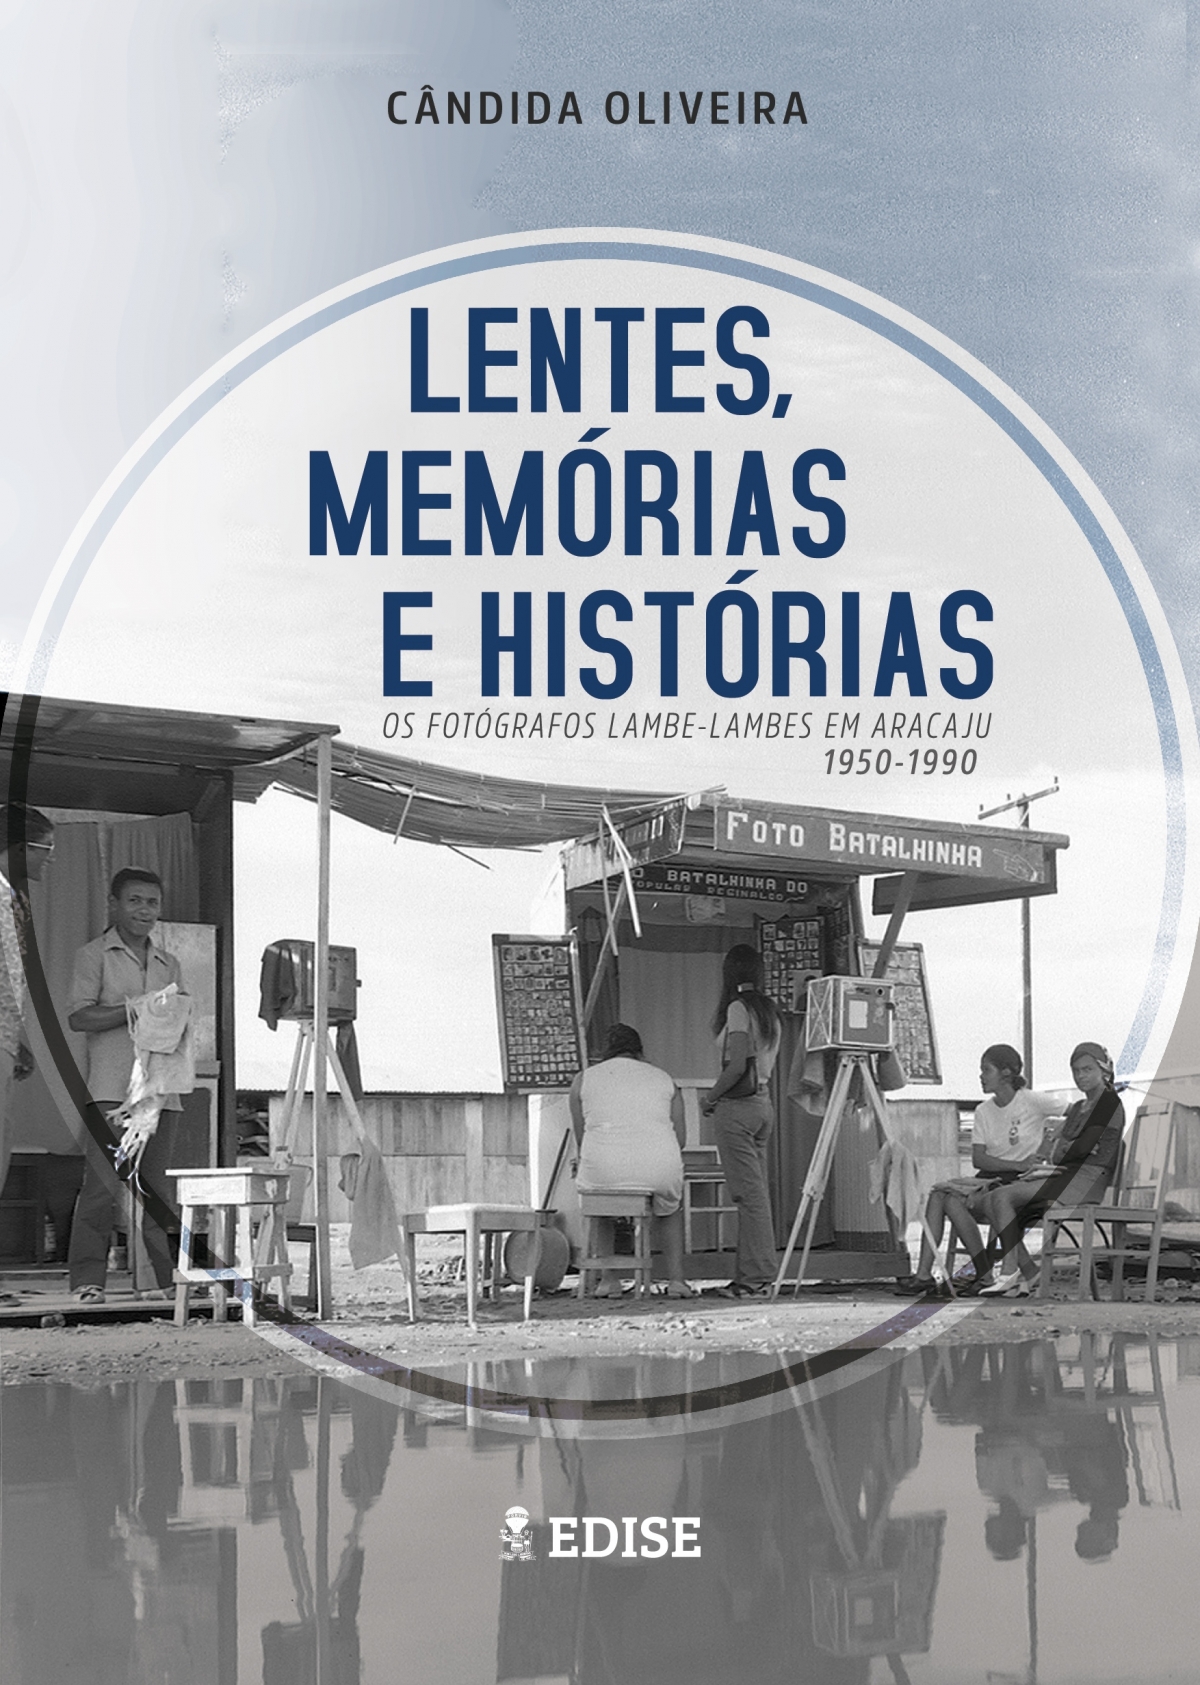 Obra "Lentes, Memórias e Histórias: os fotógrafos lambe-lambes em Aracaju 1950-1990" (Imagem: Reprodução)